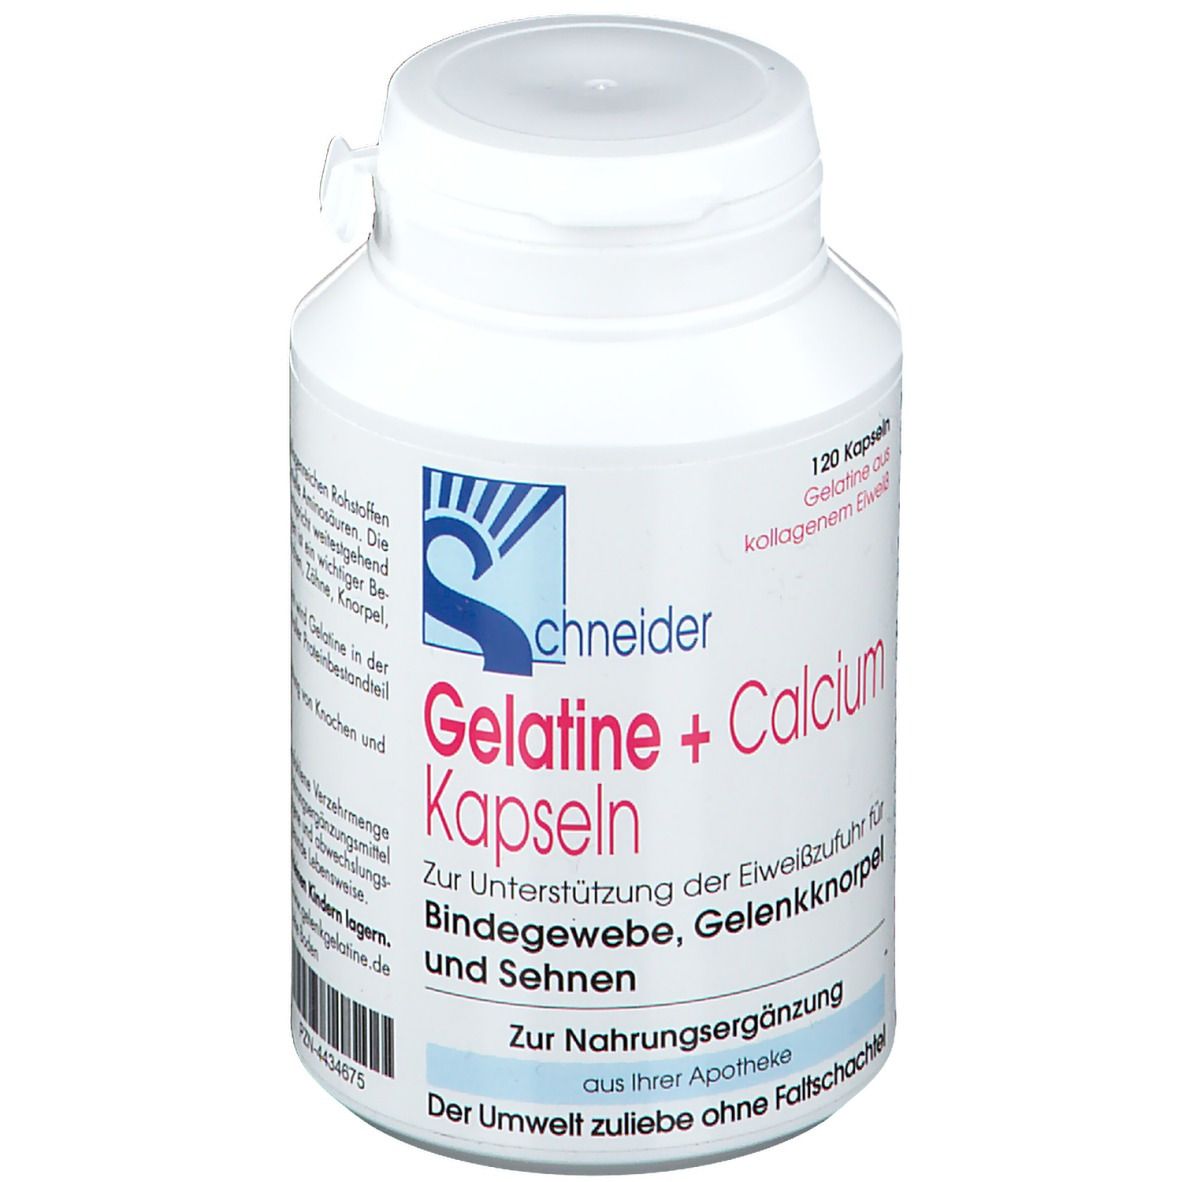 Image of Gelatine + Calcium